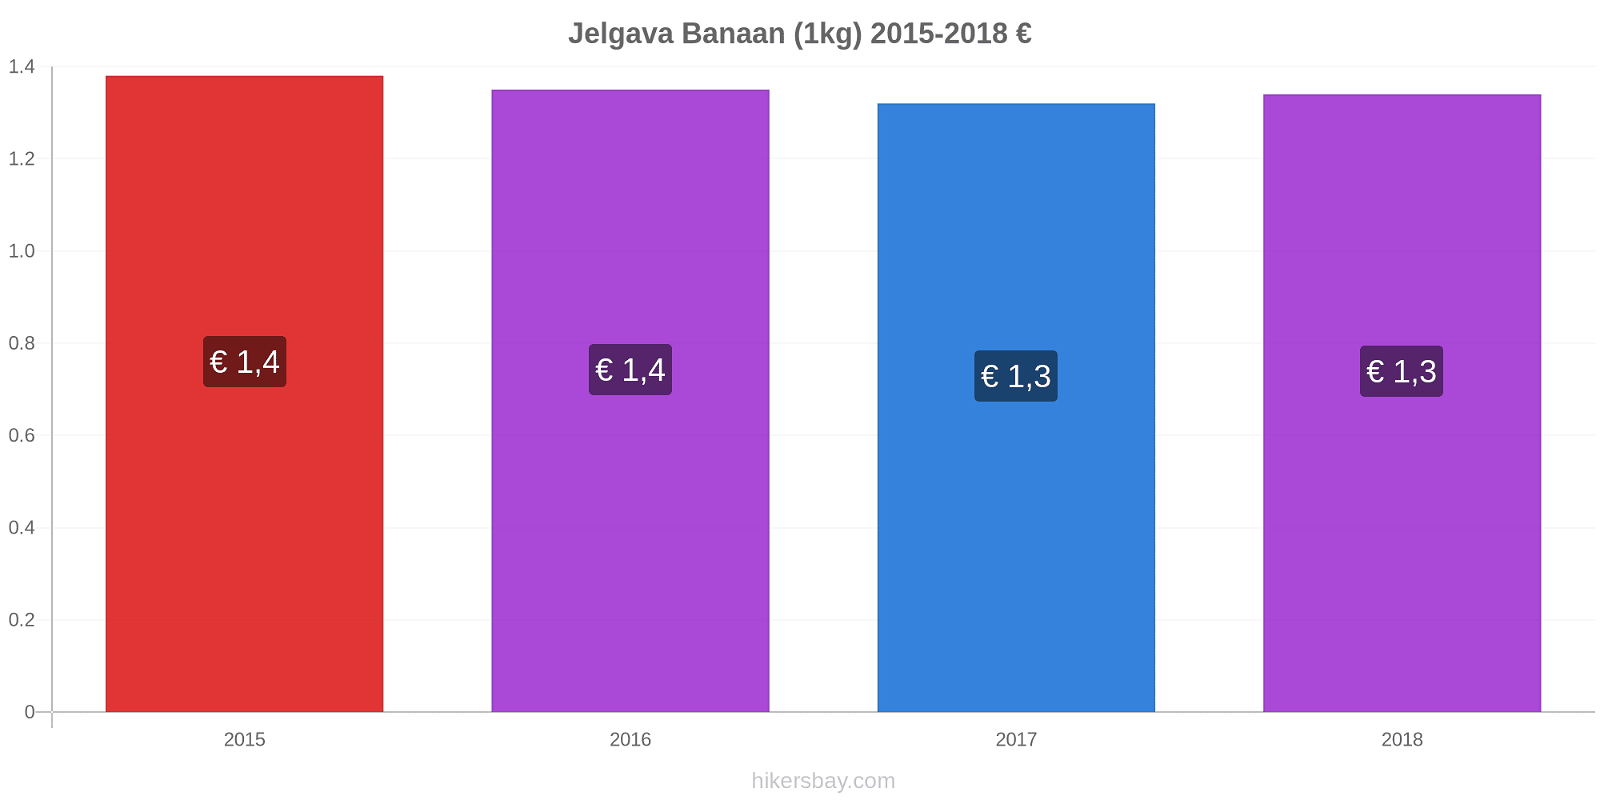 Jelgava prijswijzigingen Banaan (1kg) hikersbay.com